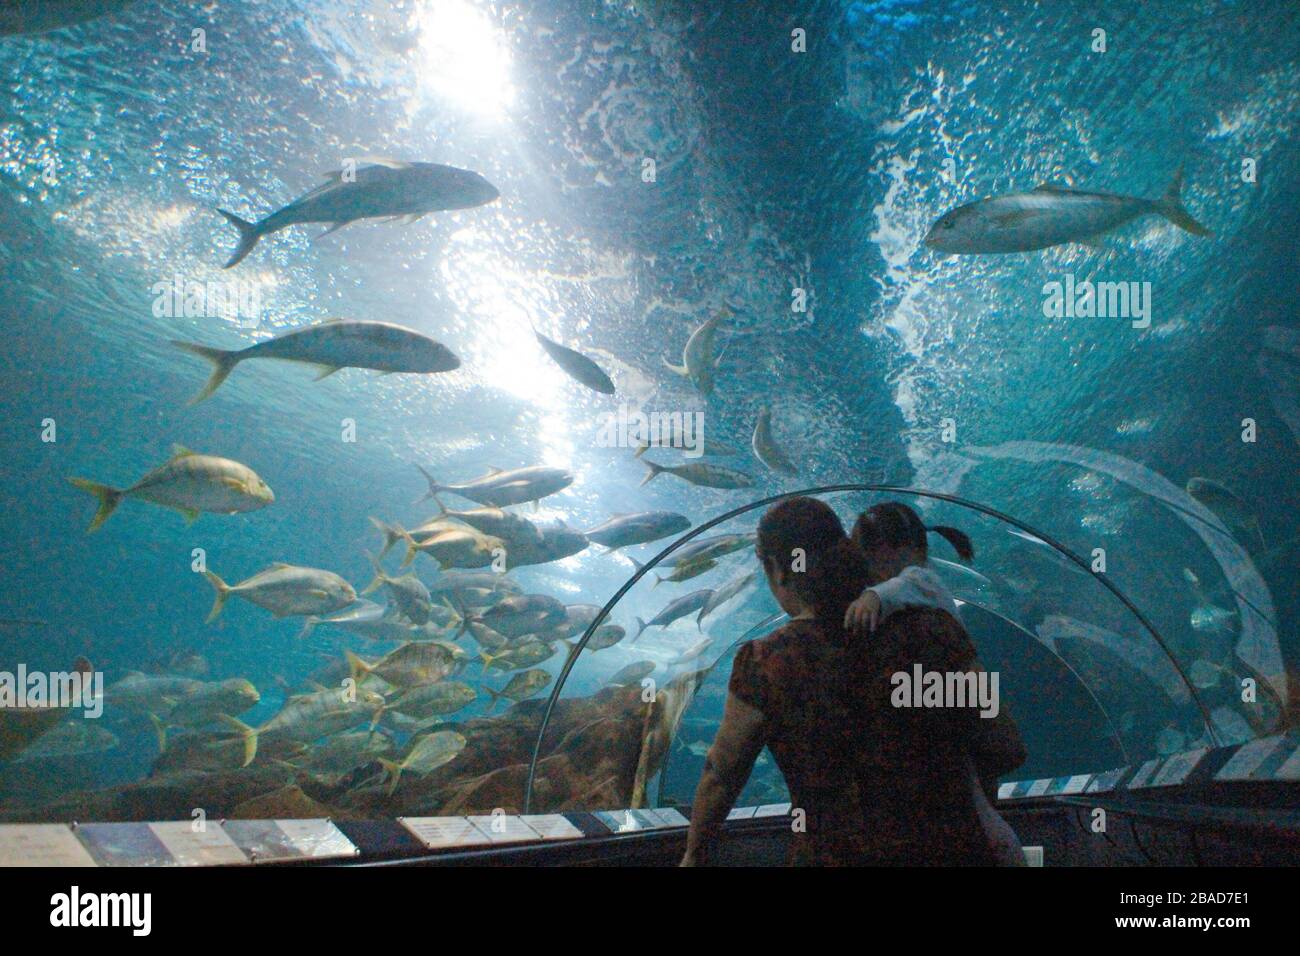 Shanghai, Shanghai, Cina. 27 marzo 2020. L'acquario oceanico di Shanghai è  uno dei più grandi acquario marino artificiale del mondo, con un'area  espositiva biologica ed ecologica unica nel bacino del fiume Yangtze